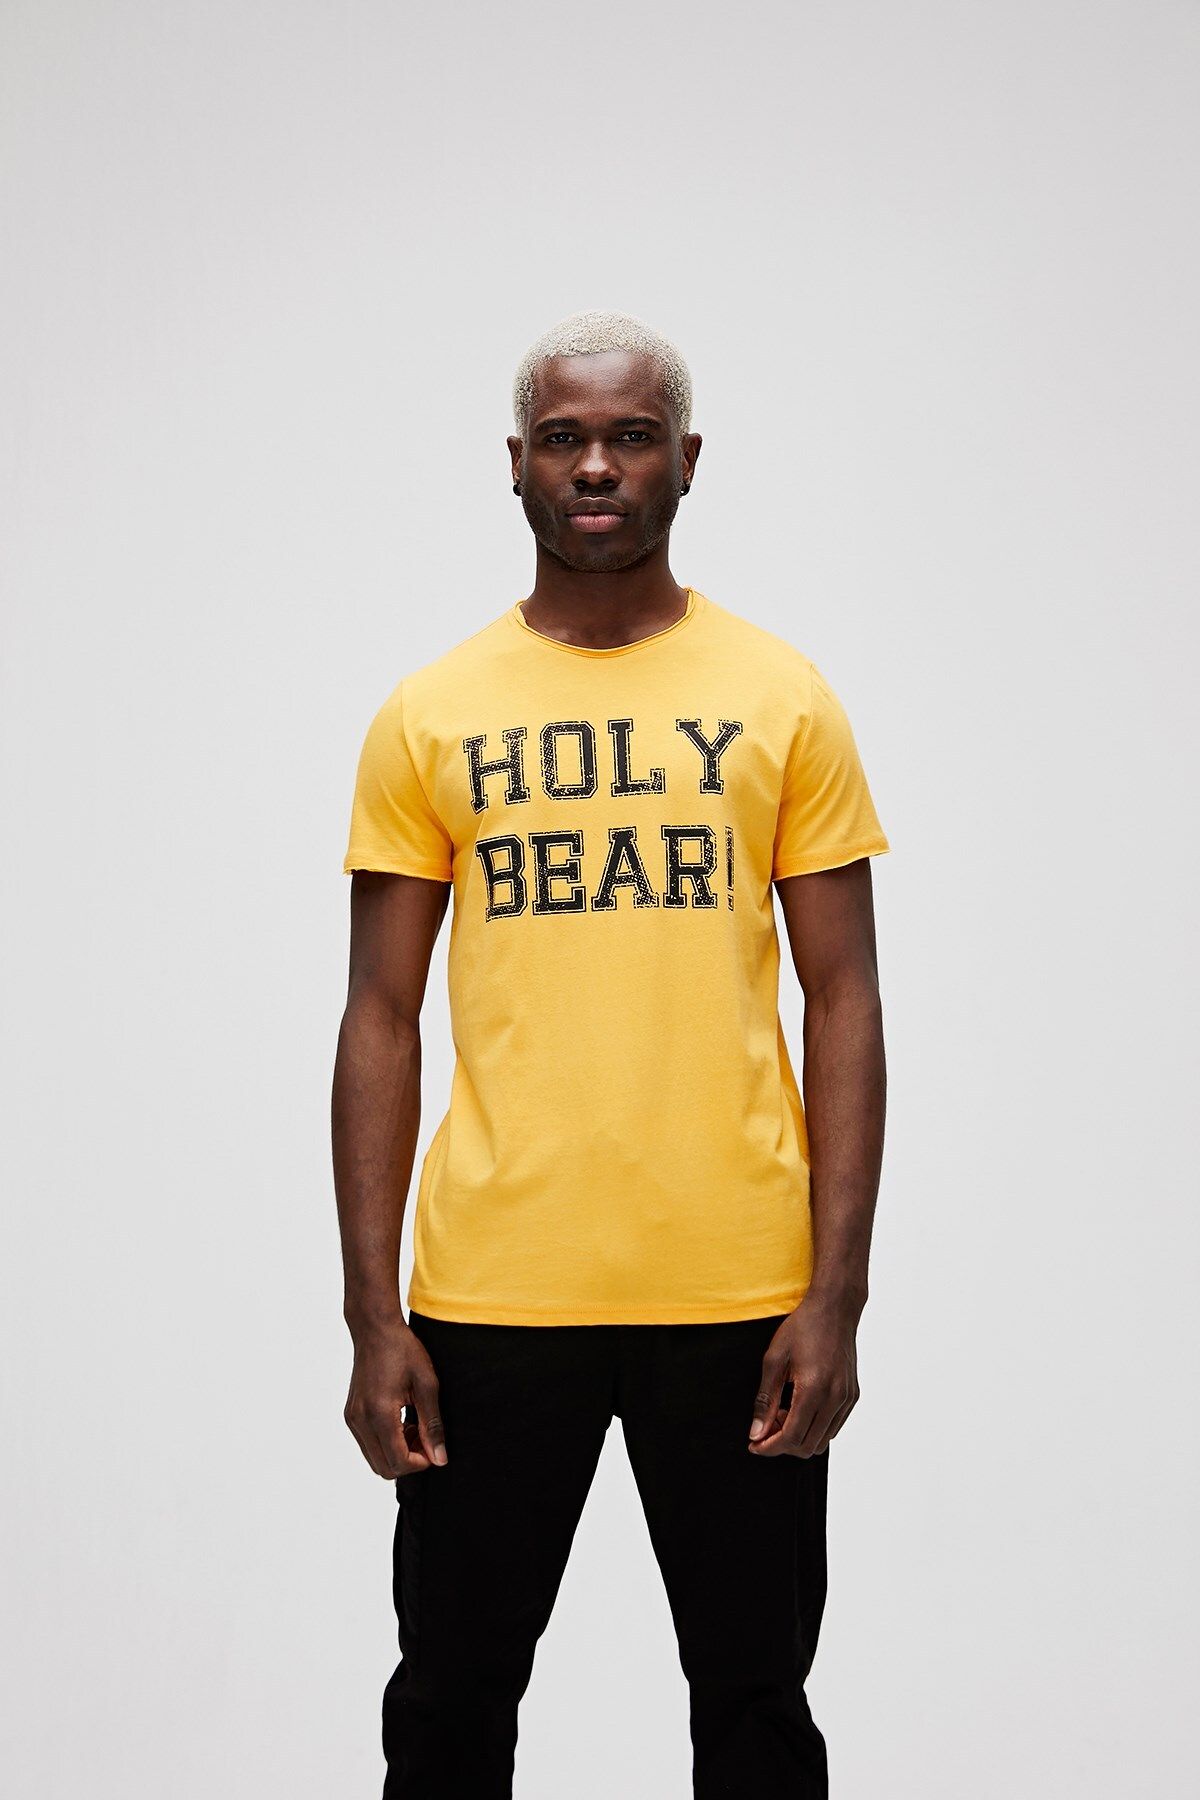 Bad Bear Erkek Holy Tee T-shirt - Hardal